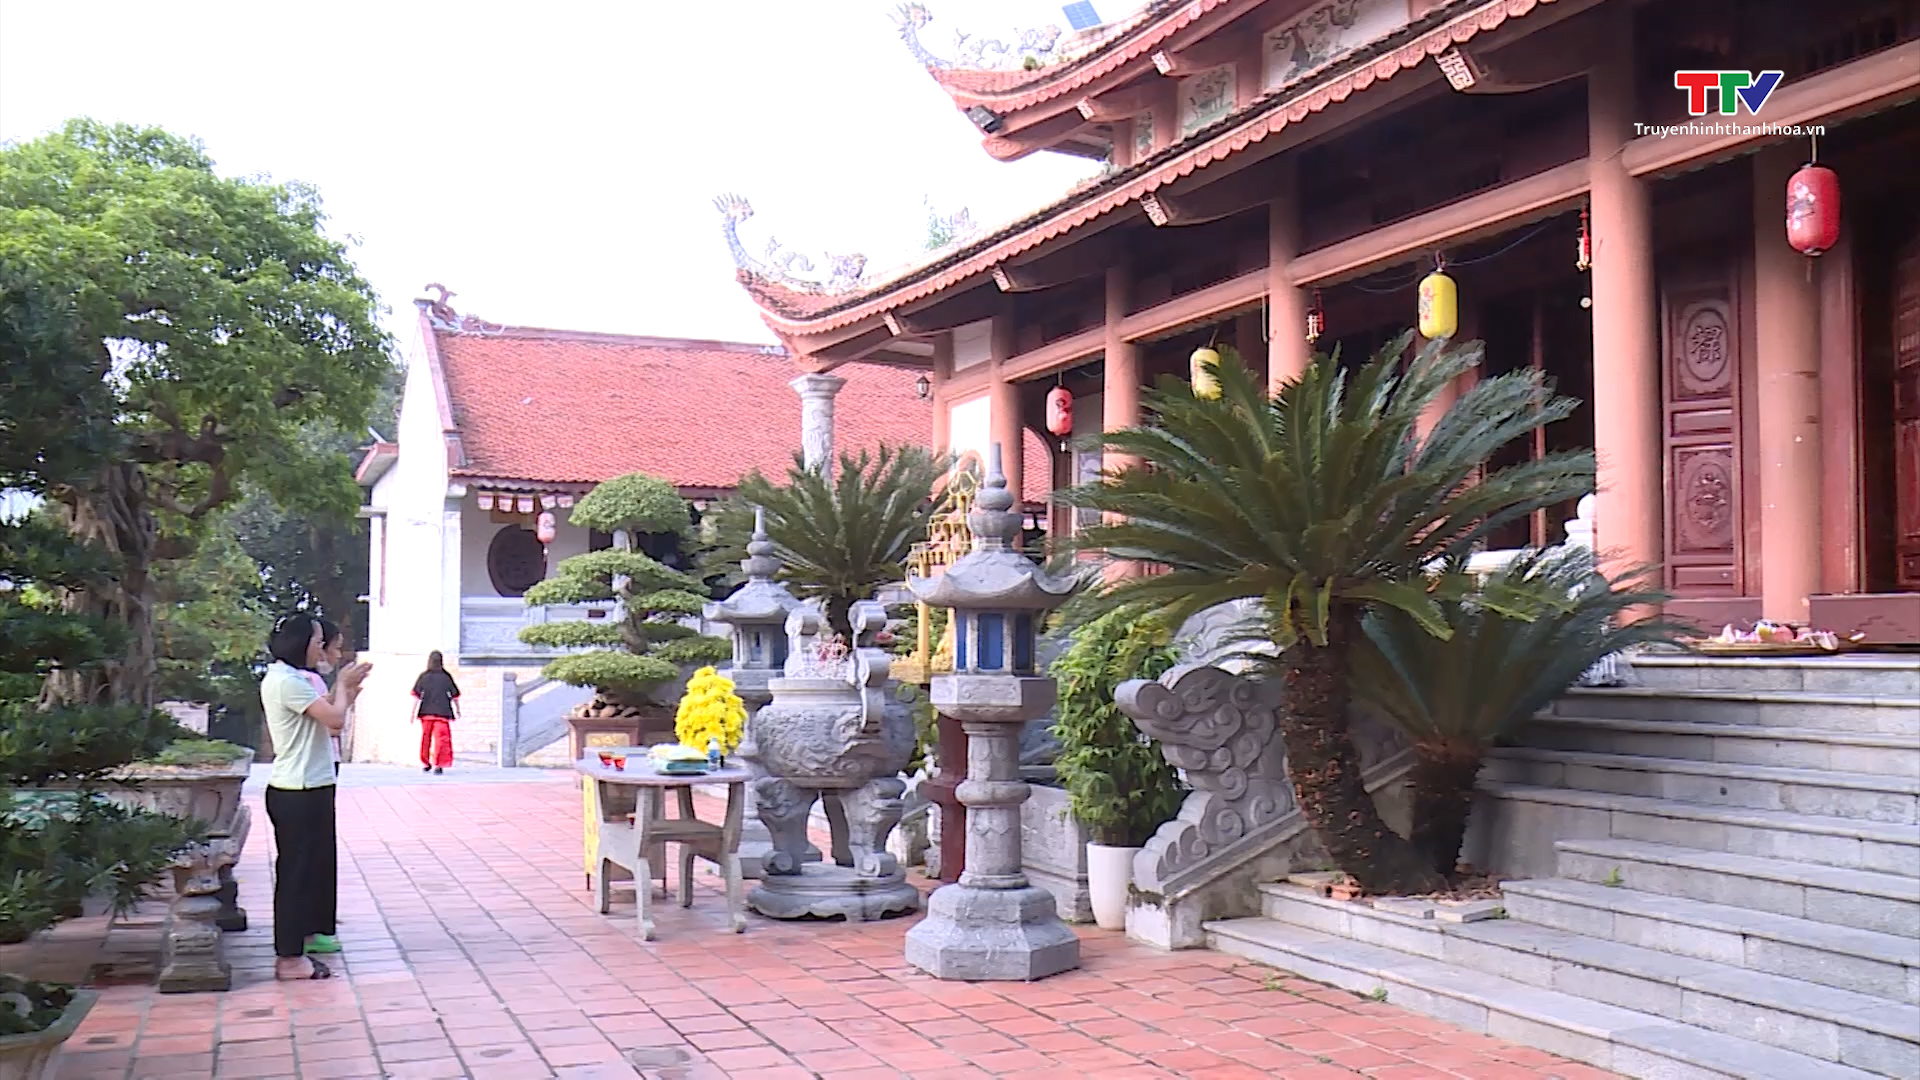 Thành phố Thanh Hóa tăng cường công tác quản lý tại các điểm du lịch tâm linh dịp cuối năm- Ảnh 3.